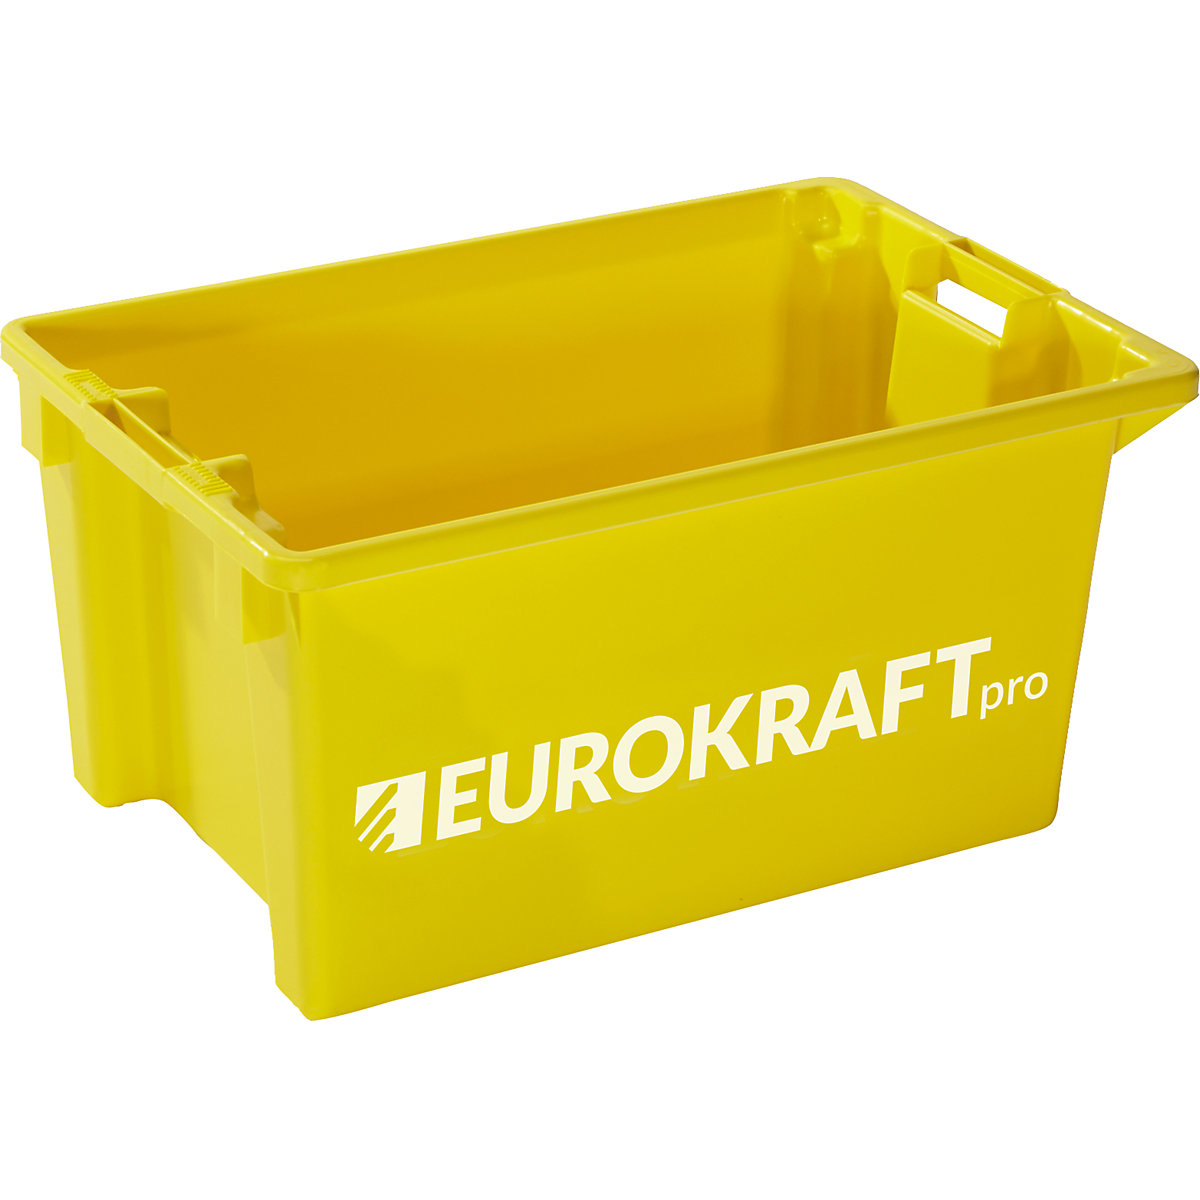 EUROKRAFTpro – Okretni spremnik za slaganje, volumen 50 l, pak. 3 kom., u žutoj boji